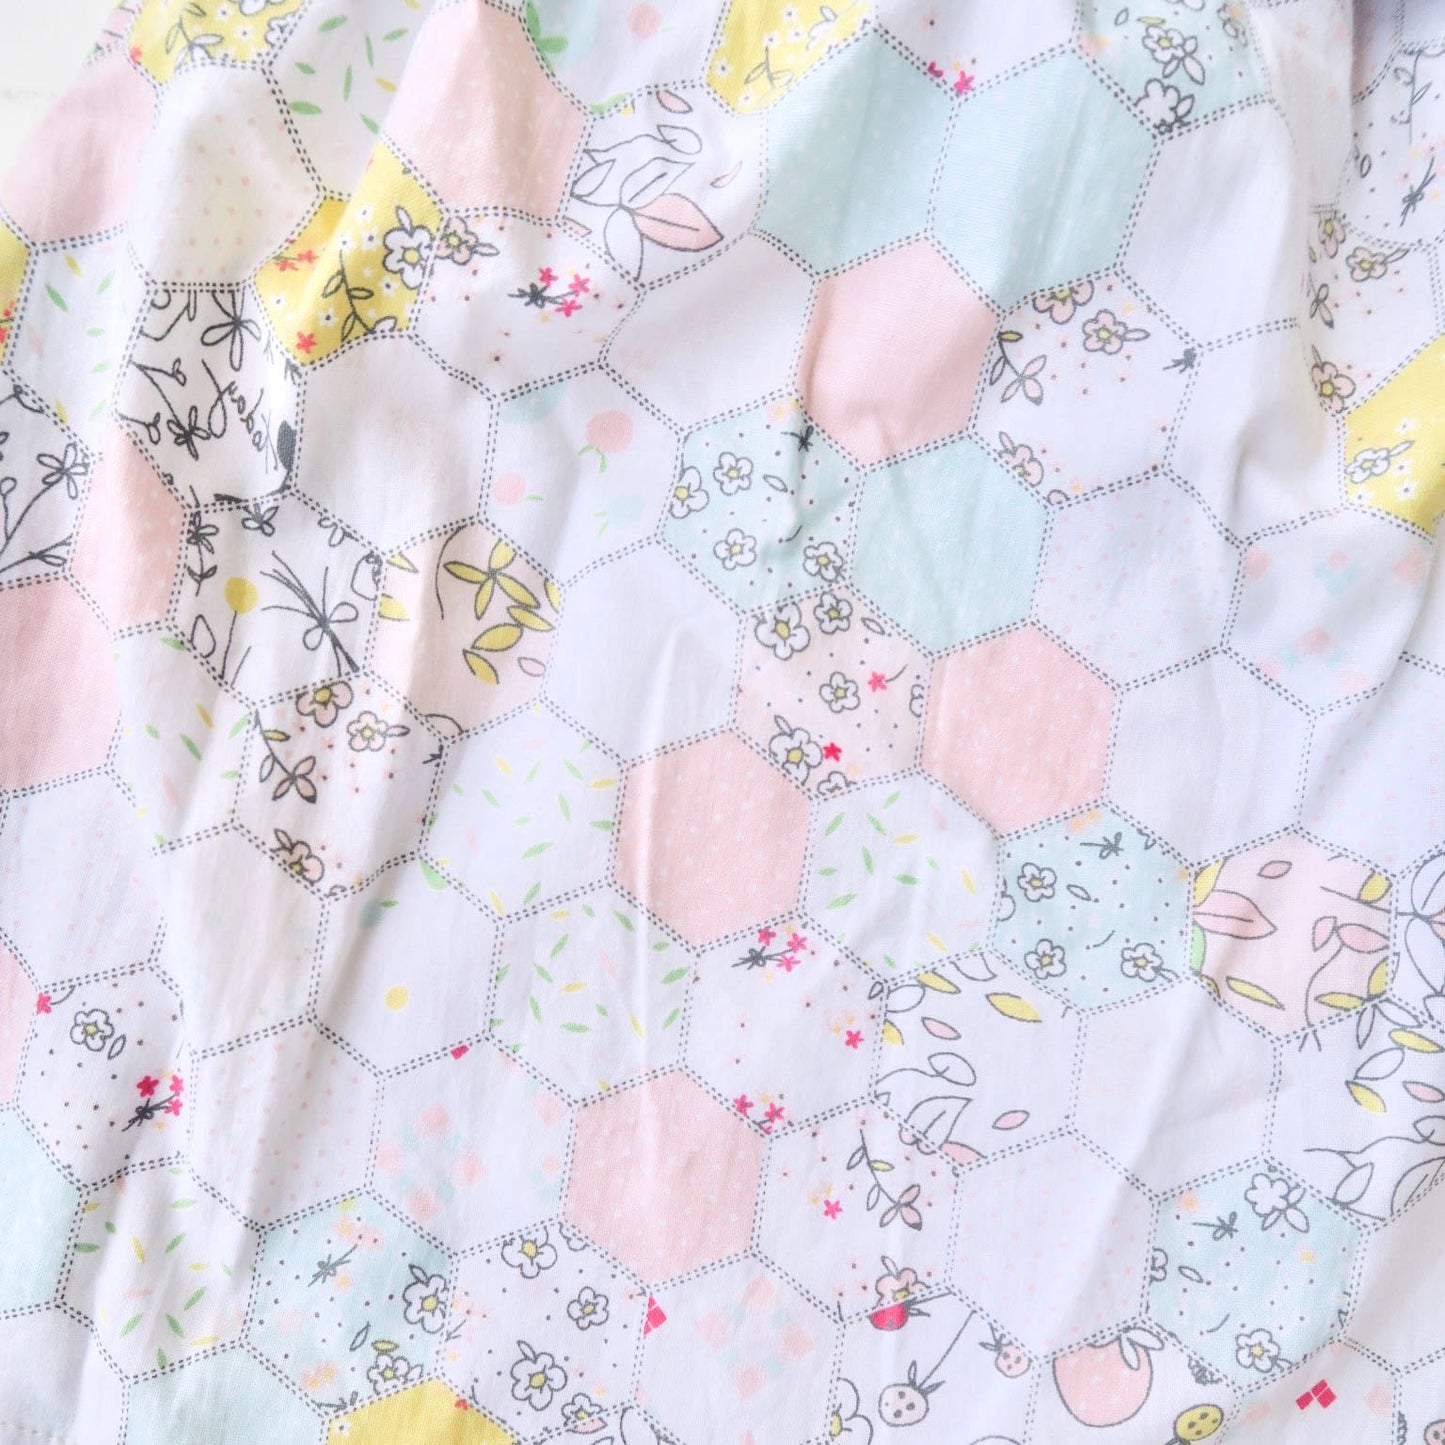 Magnolia Dress in Pastel Merry Hexagon Print - Lil' Tati